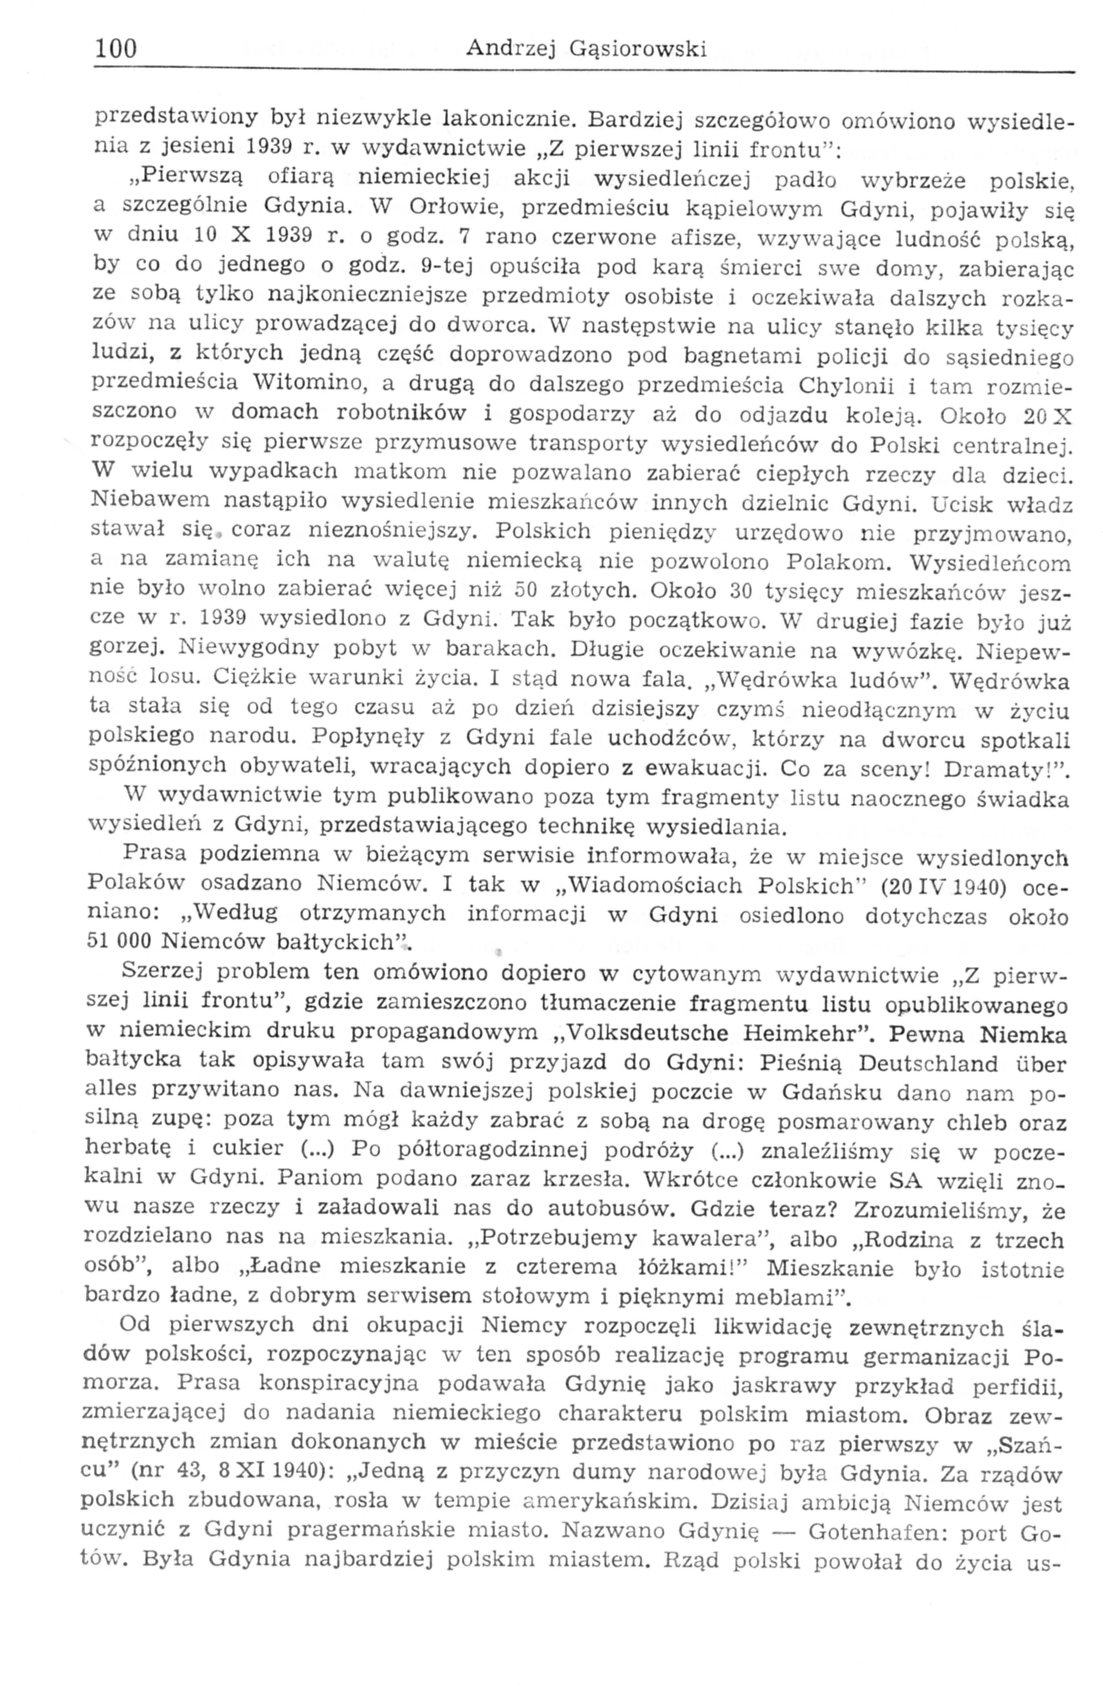 Gdynia w świetle publikacji konspiracyjnych z lat 1939-1944